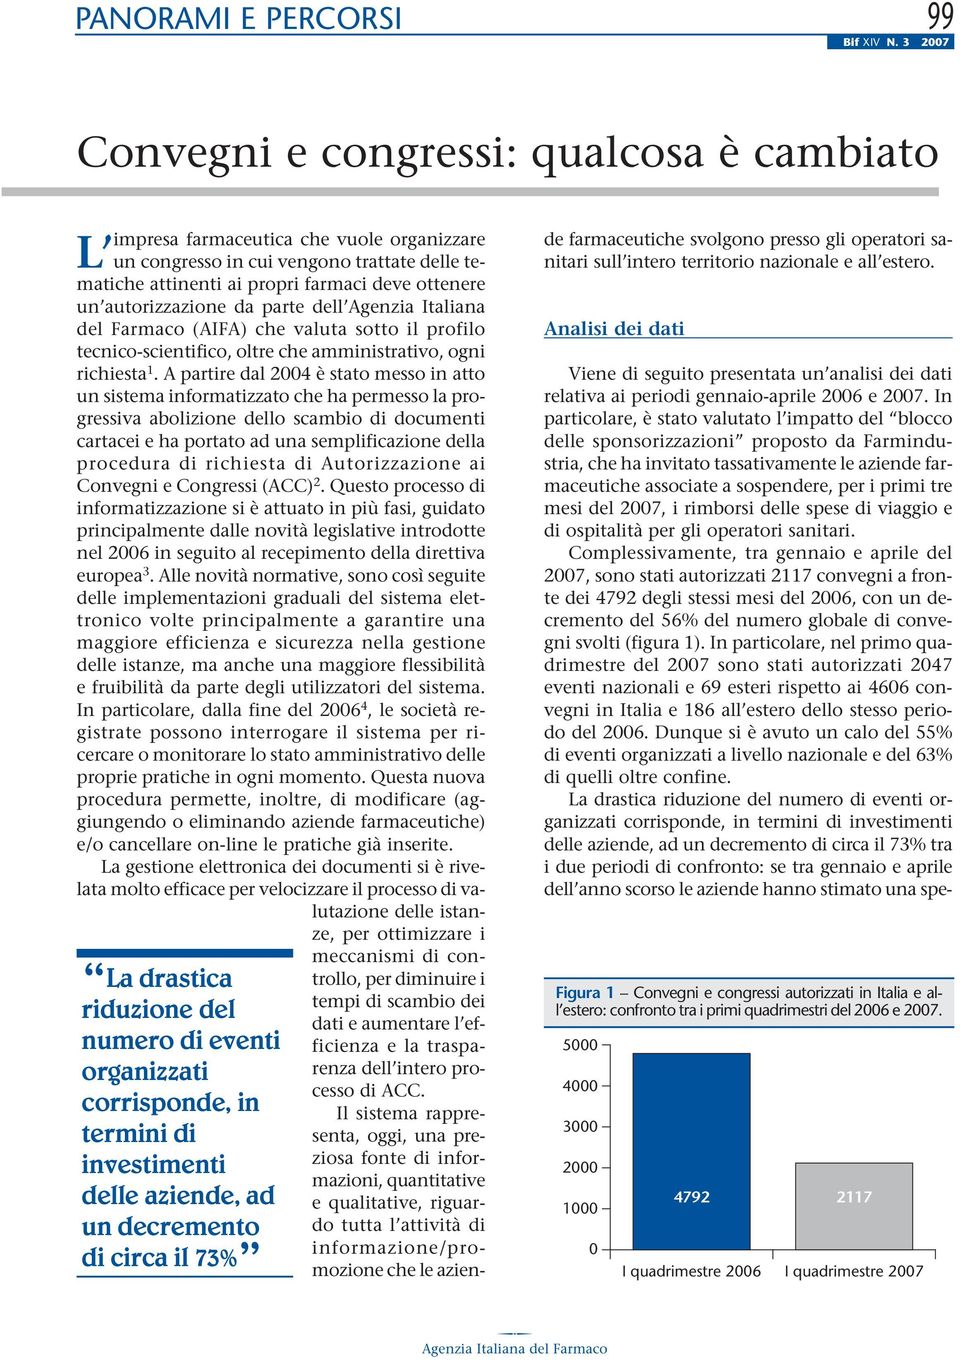 Italiana del Farmaco (AIFA) che valuta sotto il profilo tecnico-scientifico, oltre che amministrativo, ogni richiesta 1.